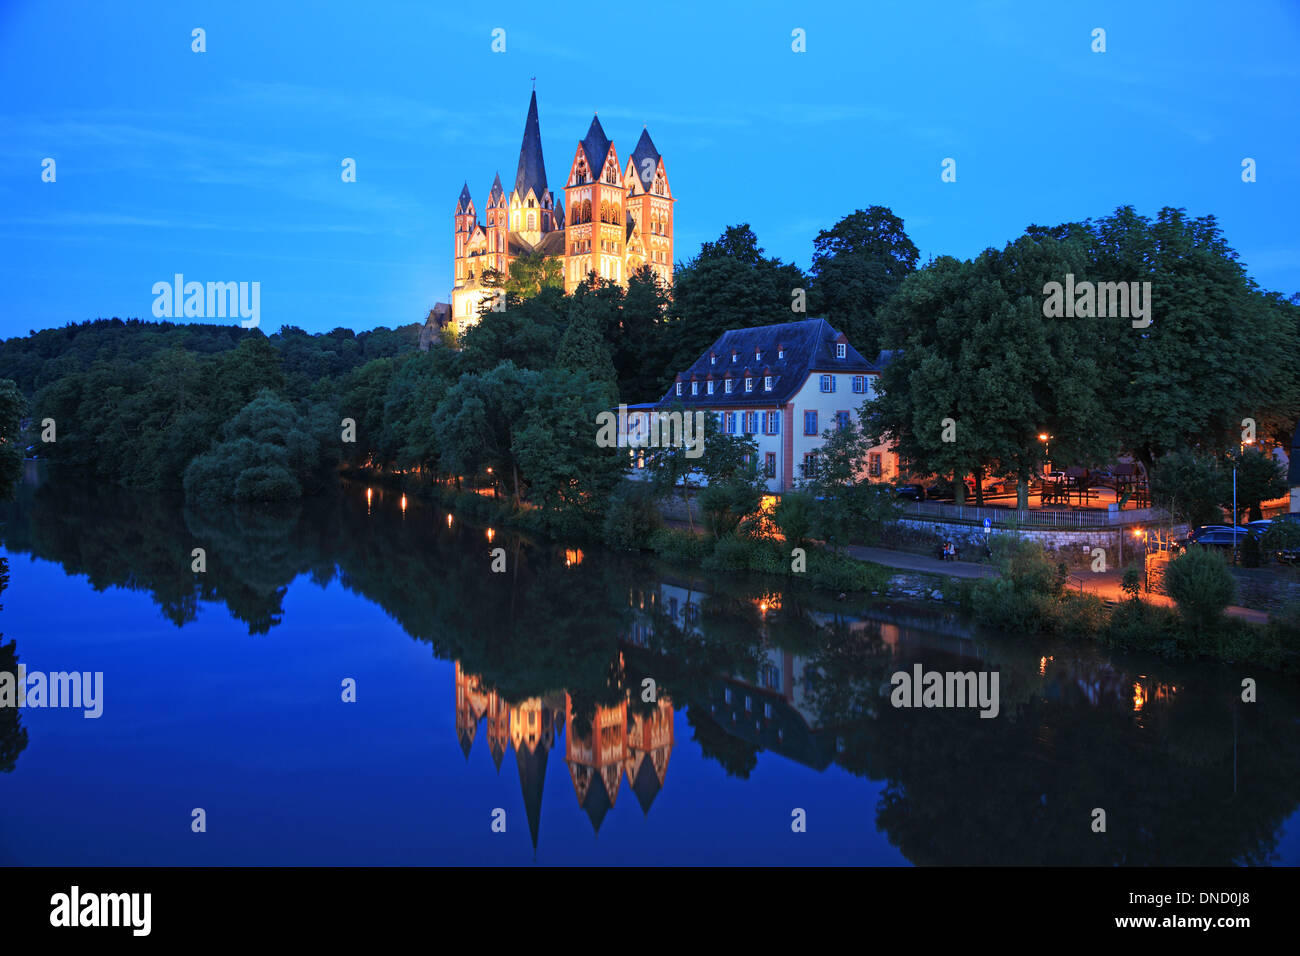 Germany, Hesse, Limburg Cathedral Stock Photo